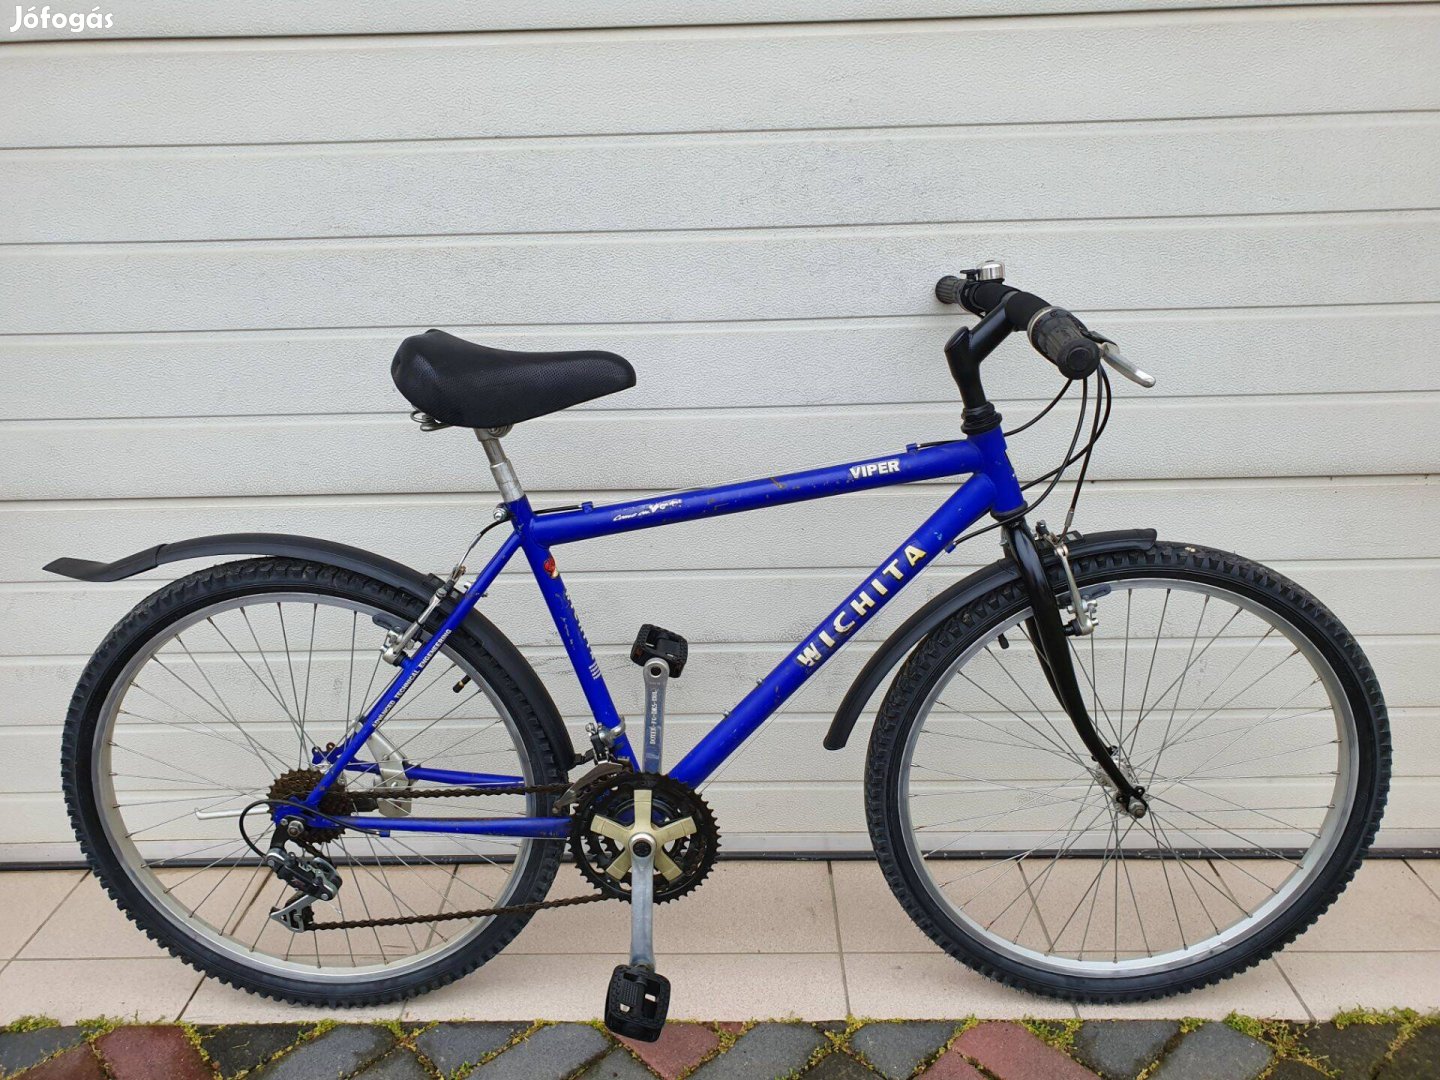 Wichita Viper Férfi kerékpár eladó Kalocsán (26)